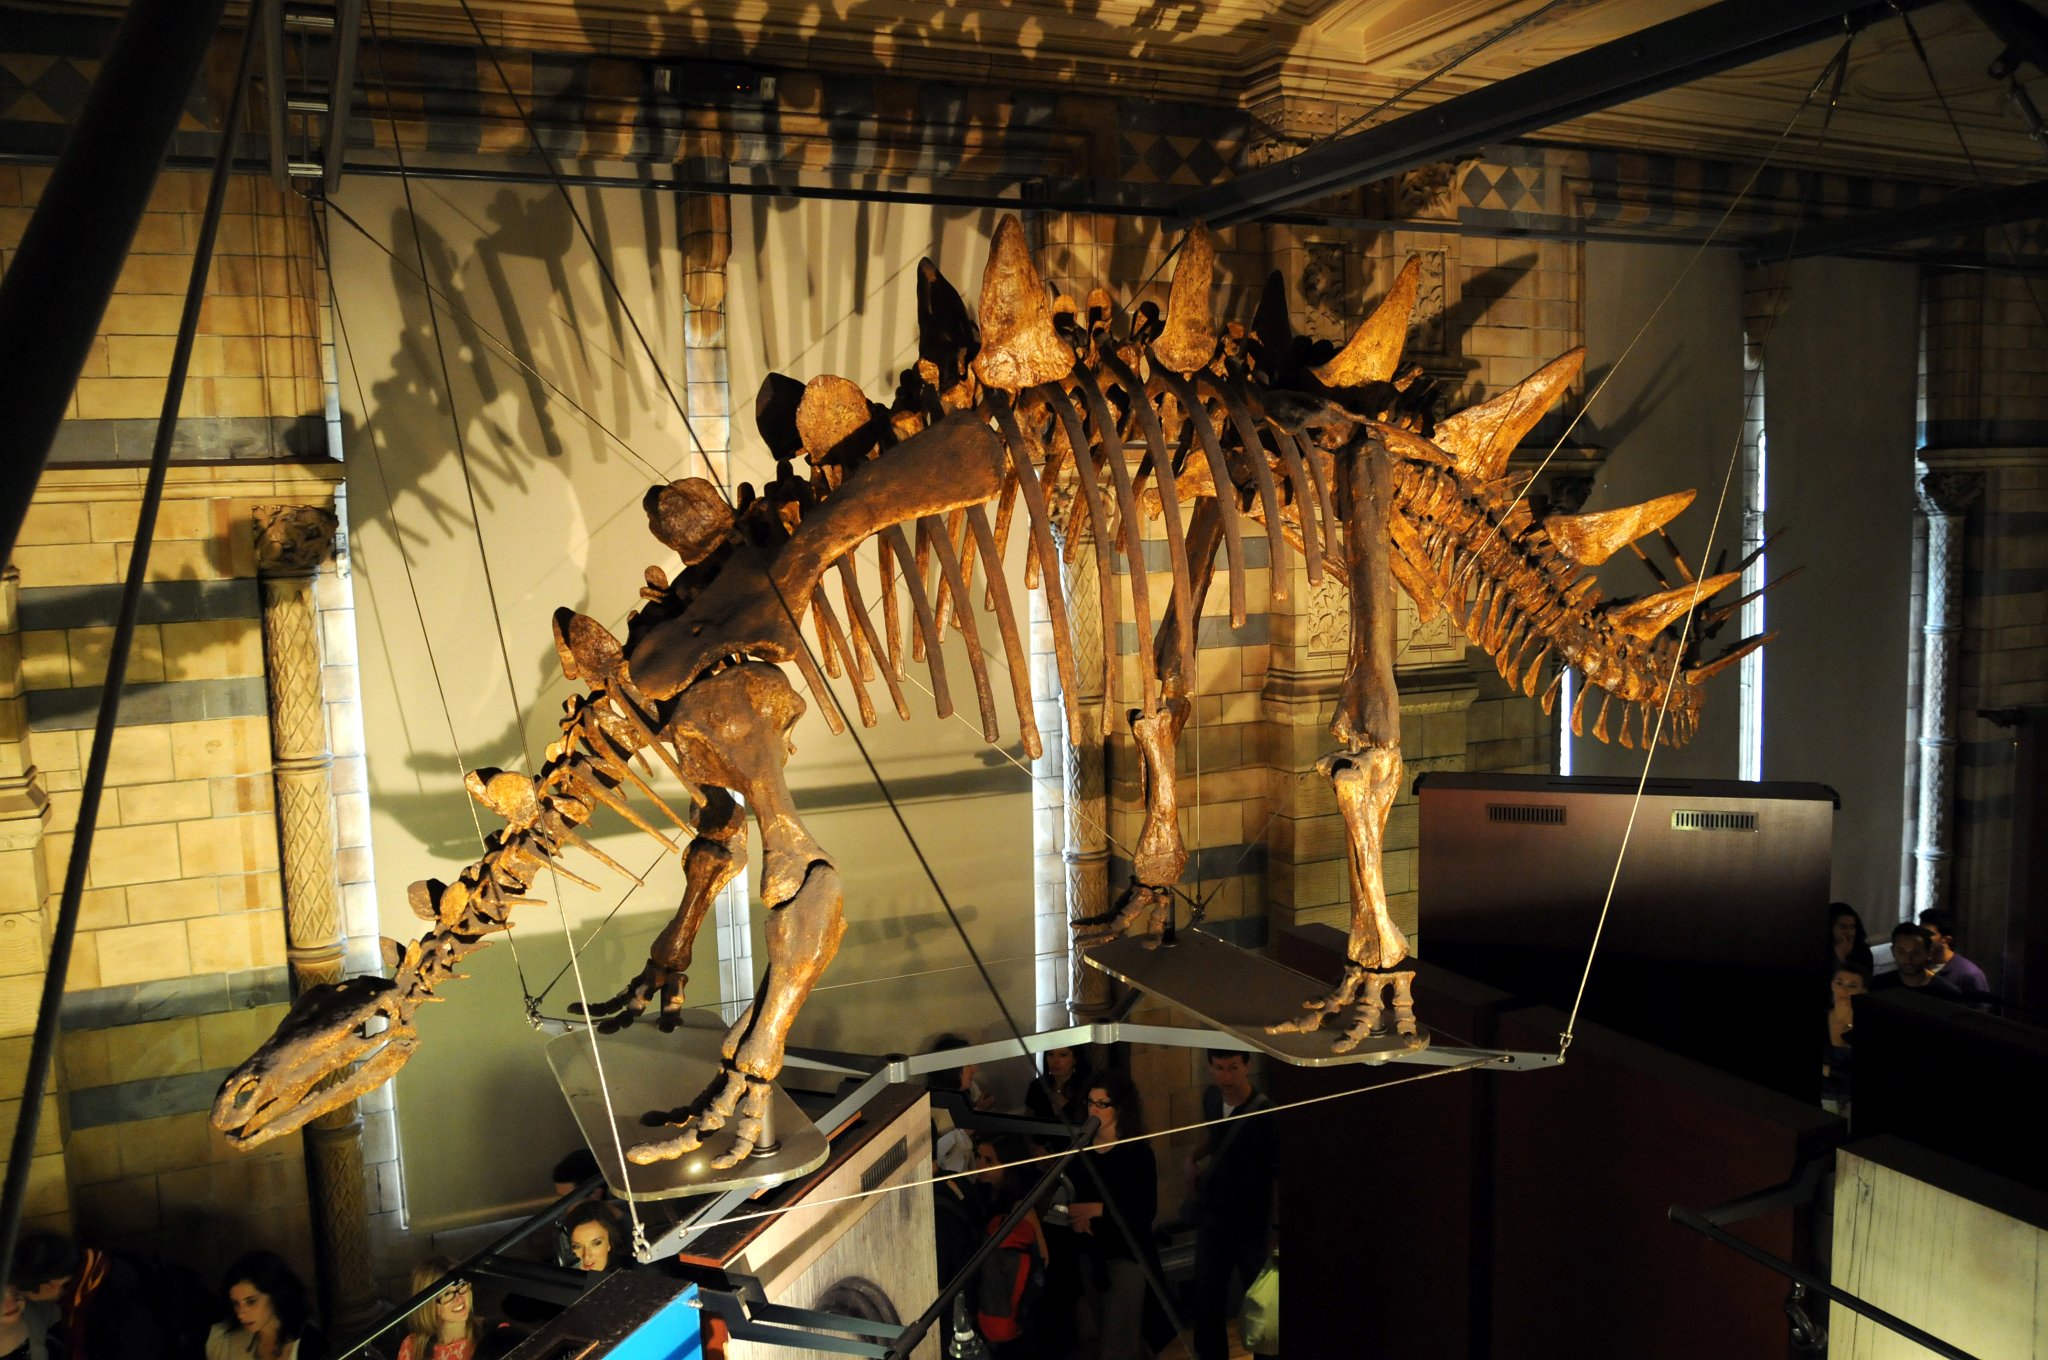 DSC_7138_1.jpg - Tuojiangosaurus („ještěr od řeky Tuo“) byl až 7 m dlouhý, 2,5 m vysoký a 2 až 3 t vážící býložravý dinosaurus. Žil před 160 až 155 milióny let (svrchní jura) na území dnešní Číny. Vyznačoval se malou, nízkou hlavou s bezzubým zobákem a malými zuby v čelistech, obloukovitým hřbetem, mohutně stavěným tělem, sloupovitými končetinami a dlouhým ocasem. Na hřbetě mel dvě řady vertikálně stojících kostěných špičatých plátů. Na konci svého svalnatého ocasu měl dva páry dlouhých trnů, jenž představovaly nebezpečnou zbraň. Jeden pár plochých trnů chránil plece tohoto dinosaura a je pravděpodobné, že krk a trup chránili malé kostěné hrboly. Tuojiangosaurus byl přizpůsobený na spásání přízemní vegetace. Hlavu nosil pravděpodobně méně než půl metru nad zemí. Představoval zřejmě zvíře žijící samotářsky a nebo v malých skupinkách. Hřbetní pláty mu nesloužily na obranu. Byli křehké, plné krevních kanálků, nevhodné na ochranu před silnými drápy či zuby teropodů. Jejich účelem bylo pravděpodobně vyzařování přebytečného tepla, případně předvádění se samců před samicemi.